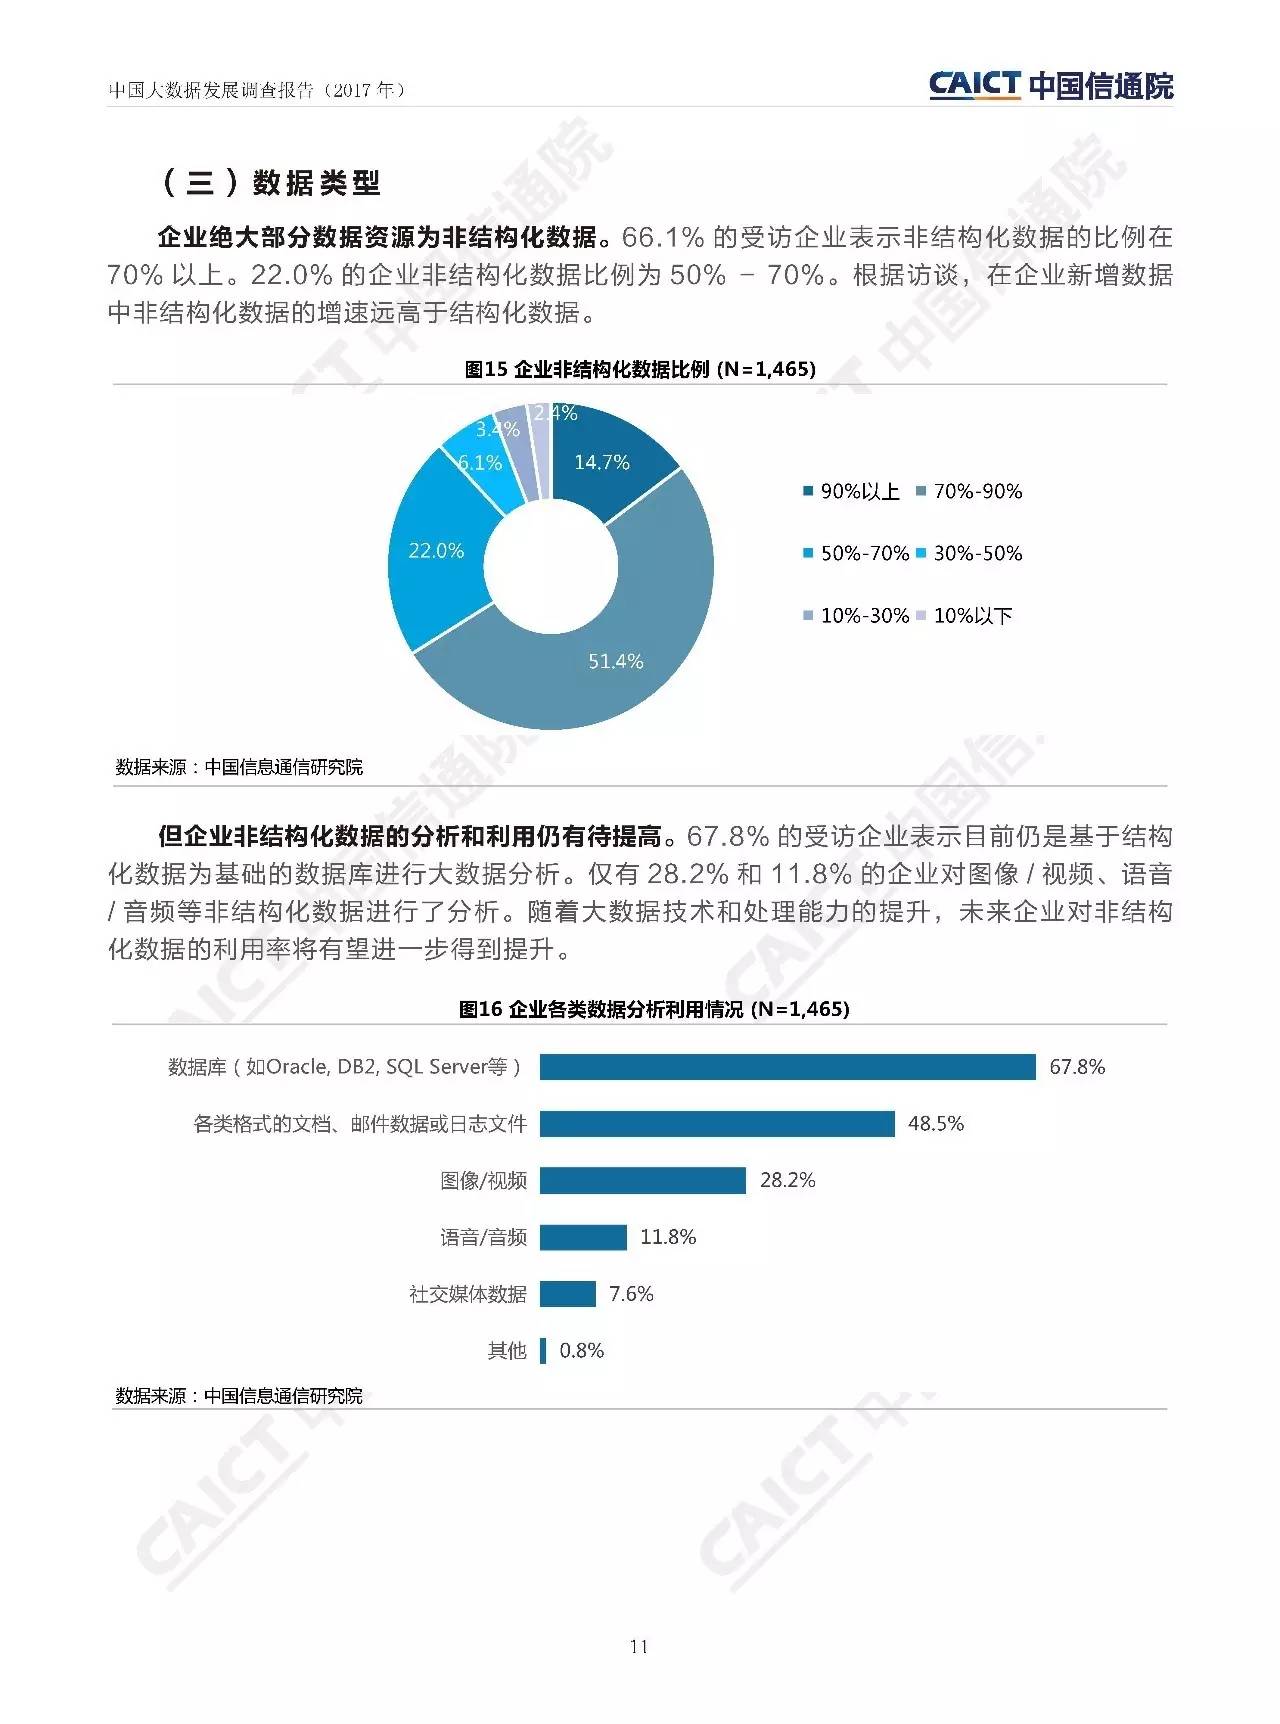 中国工信部电信院《中国大数据发展调查报告（2017年）》